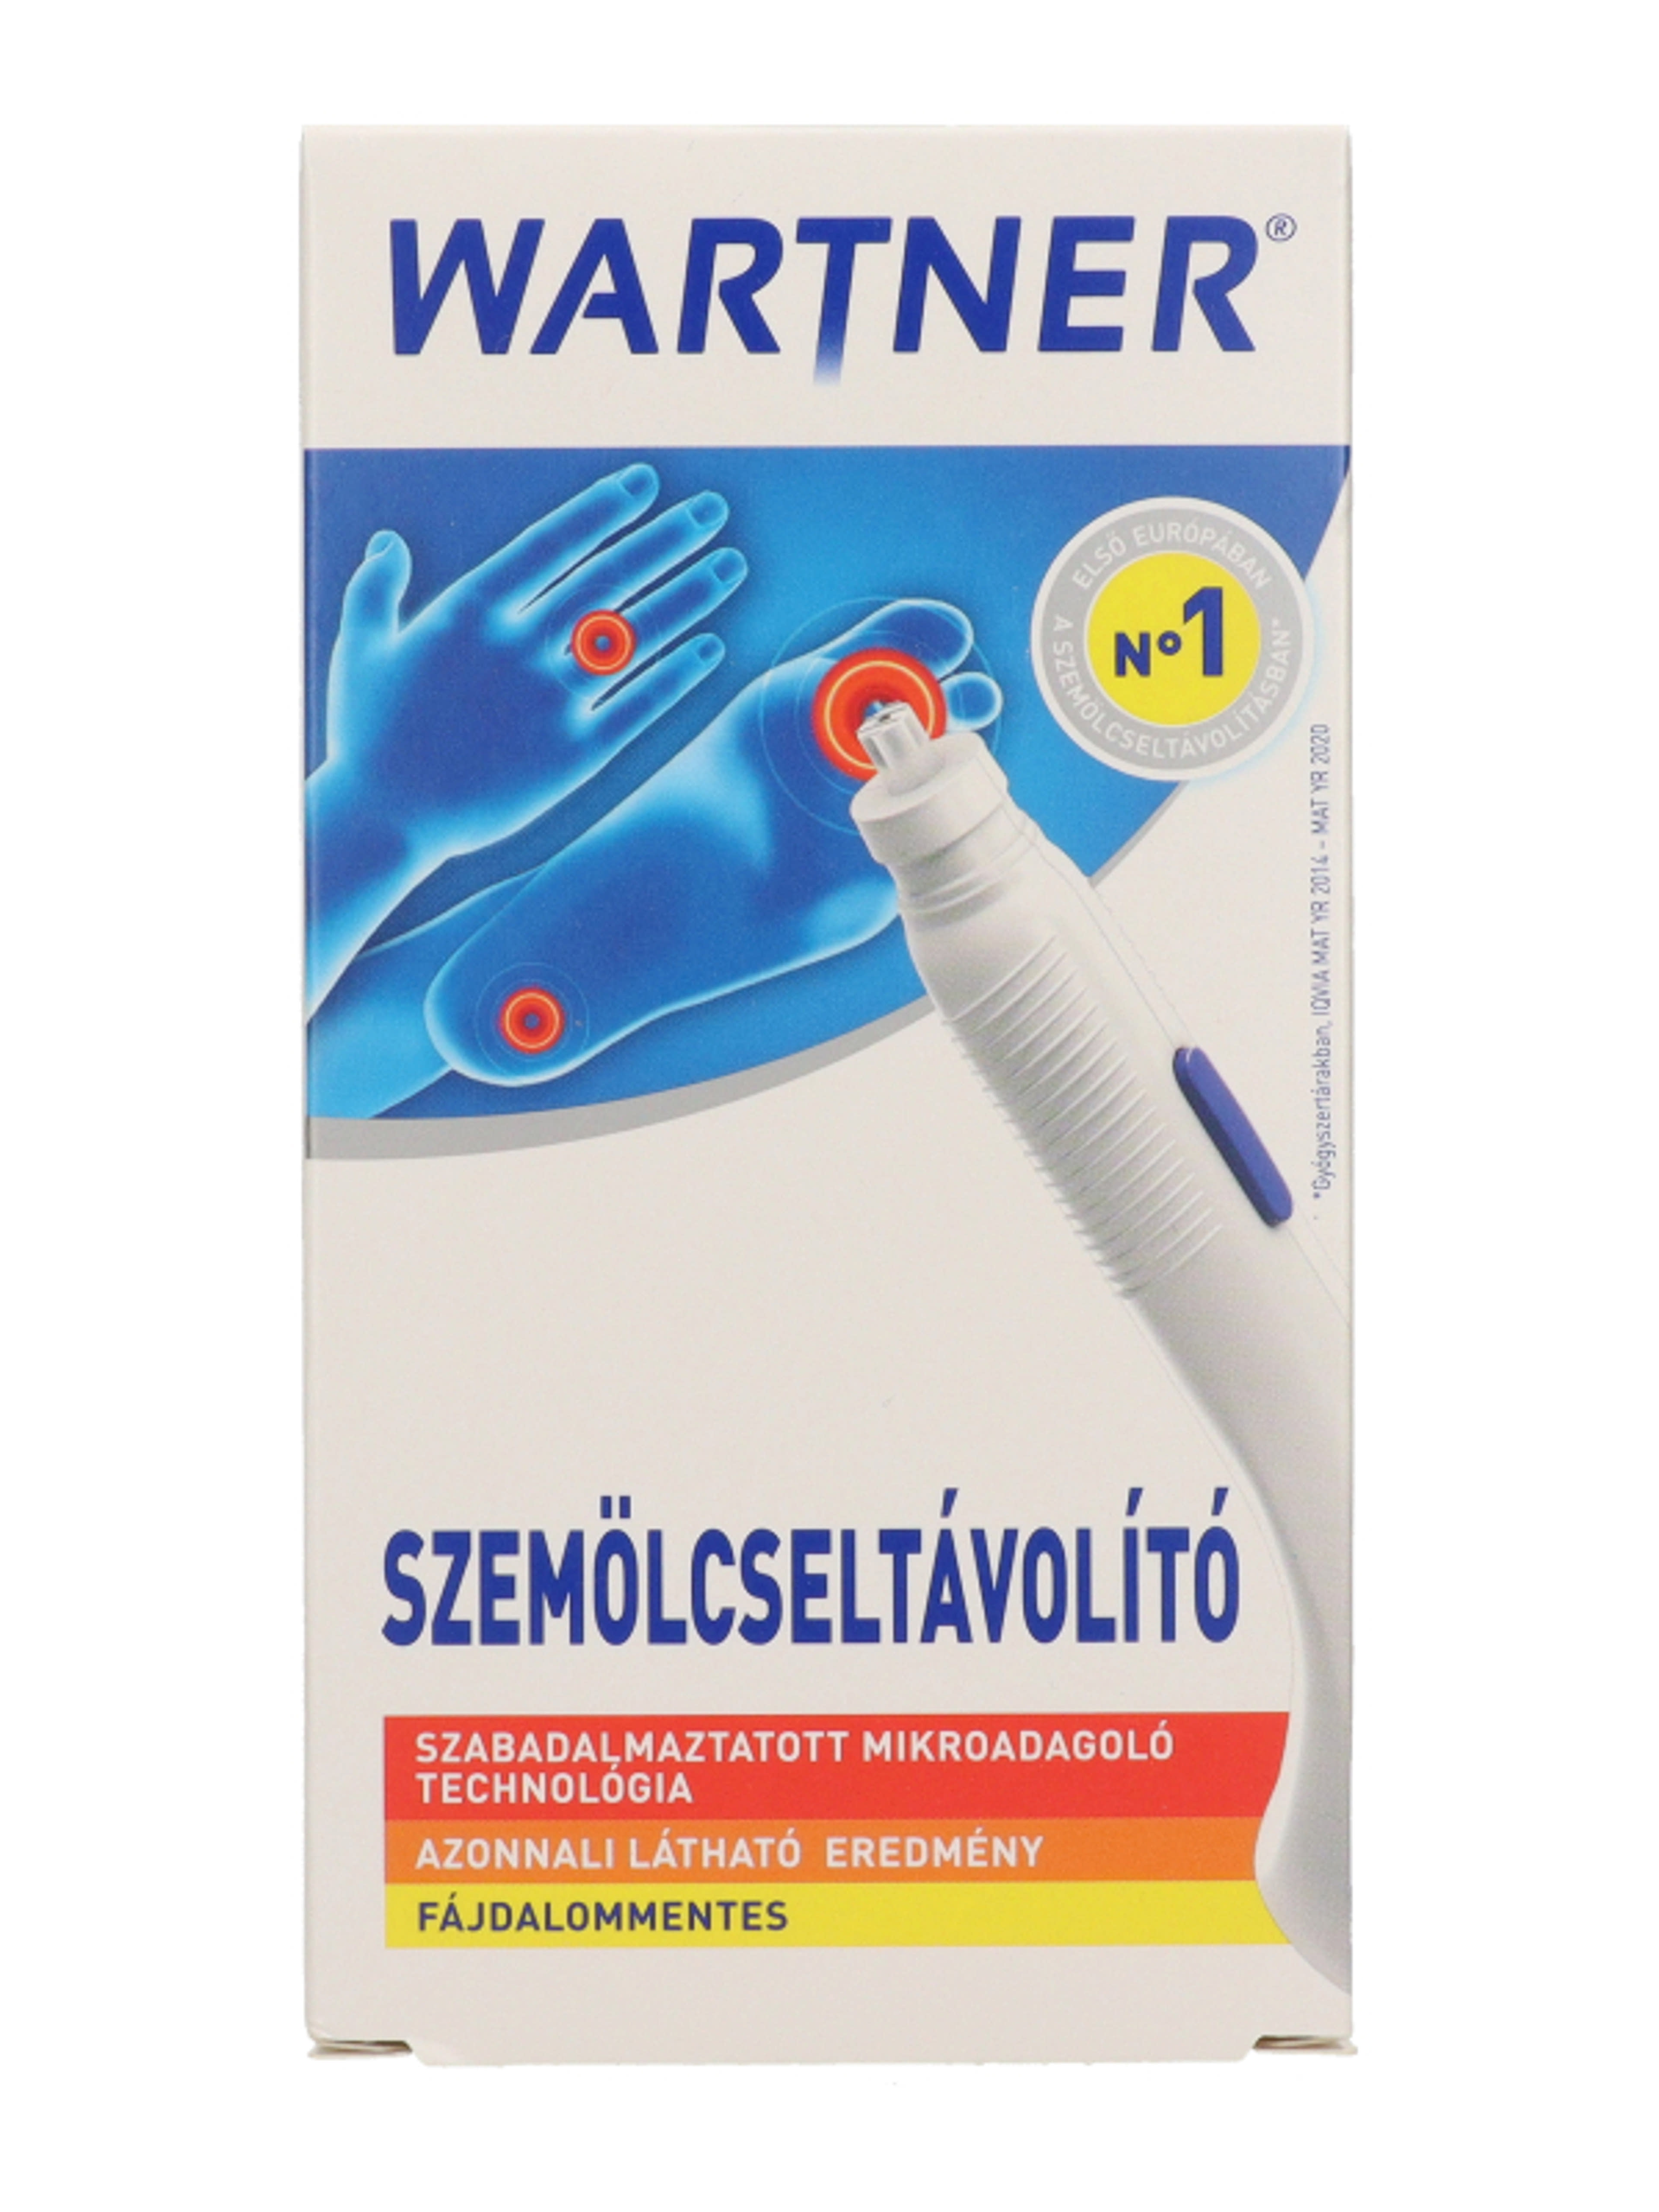 Wartner szemölcseltávolító stift 2.0 - 1,5 ml-2